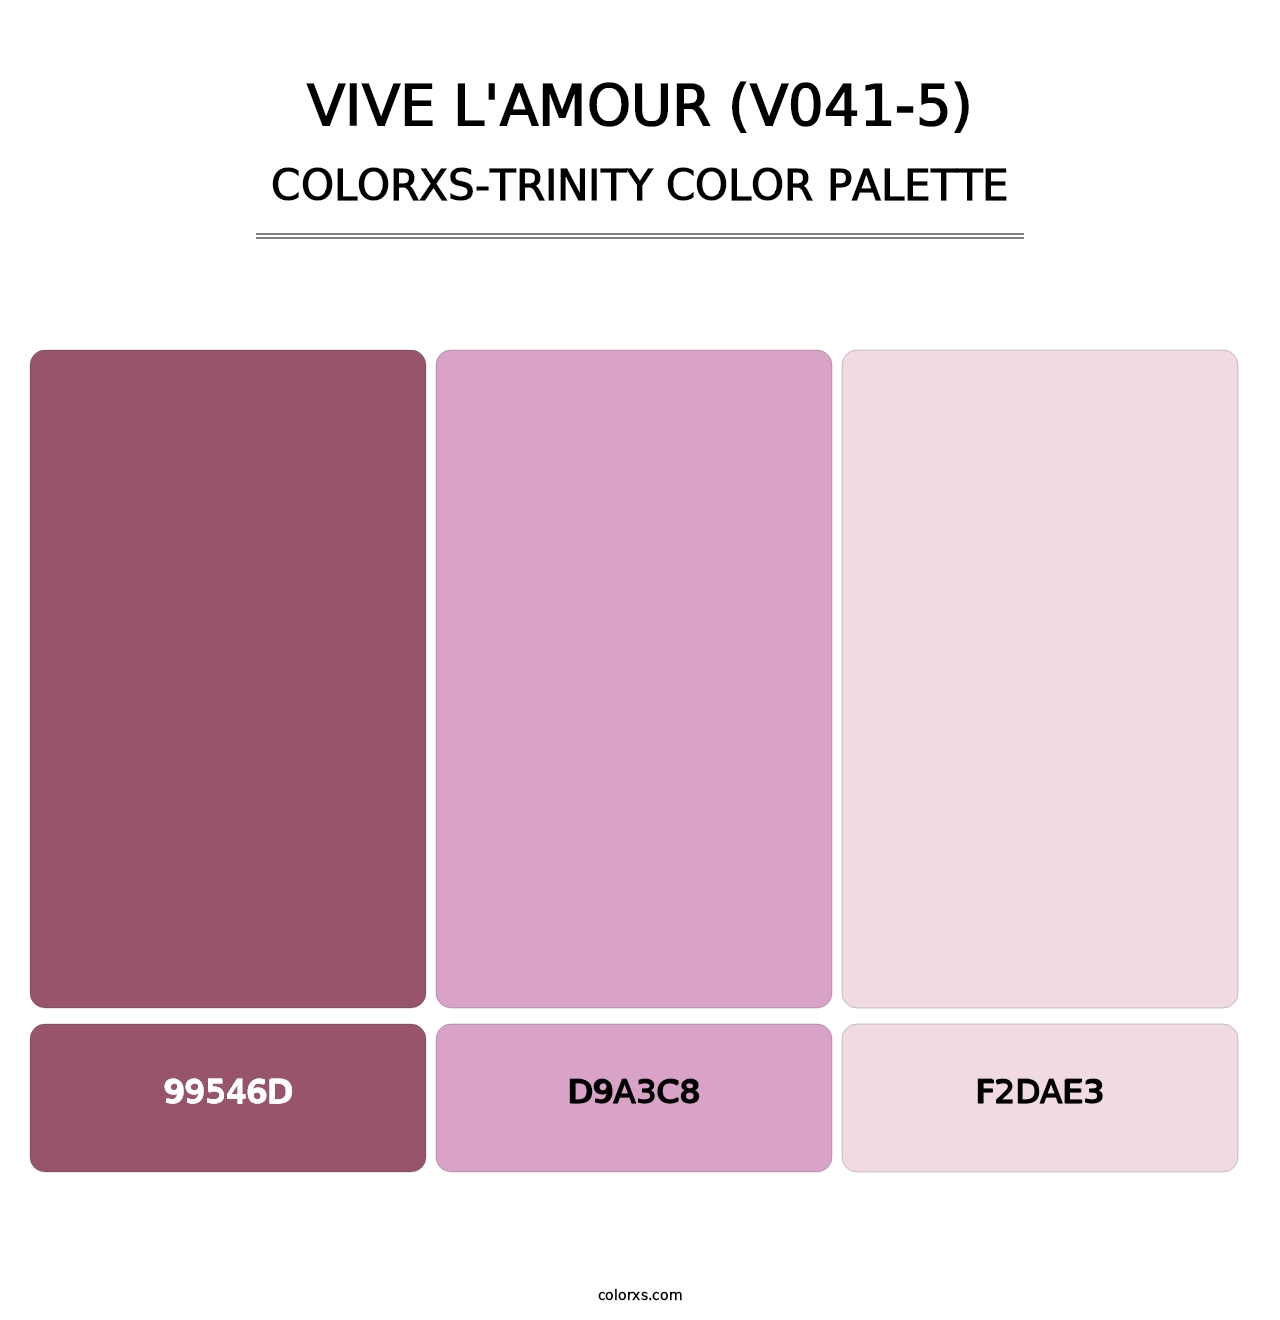 Vive l'amour (V041-5) - Colorxs Trinity Palette